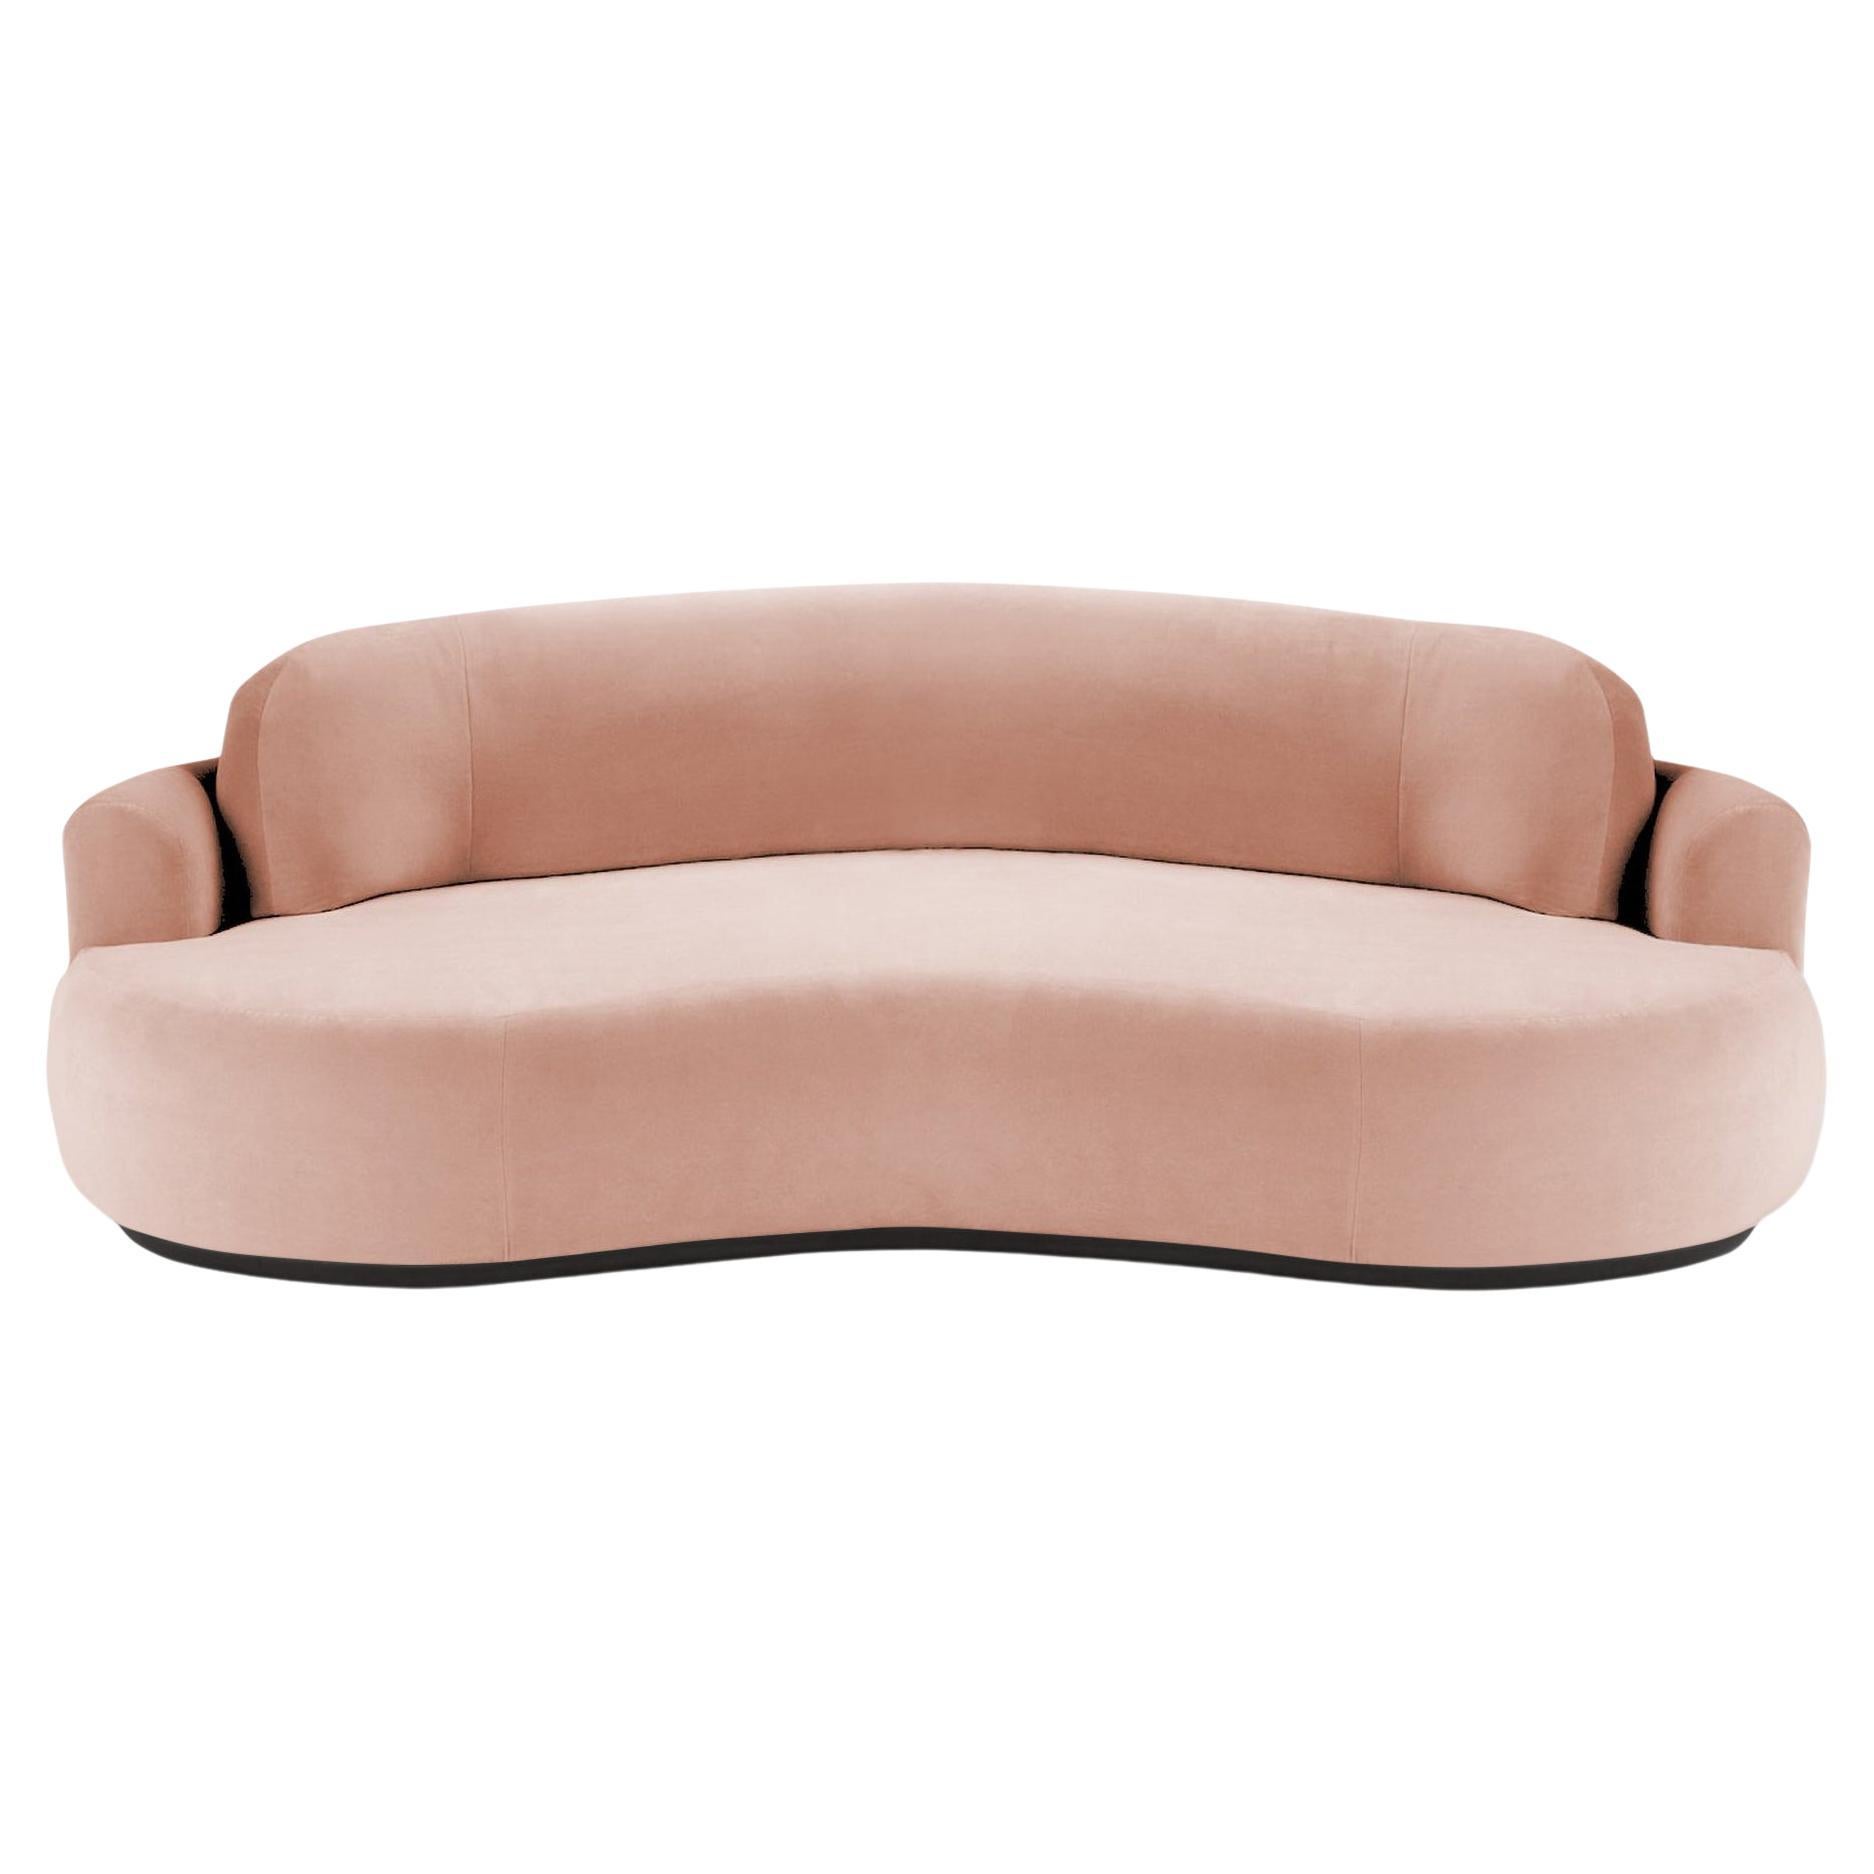 Naked Round Sofa, Medium with Beech Ash-056-5 and Vigo Blossom